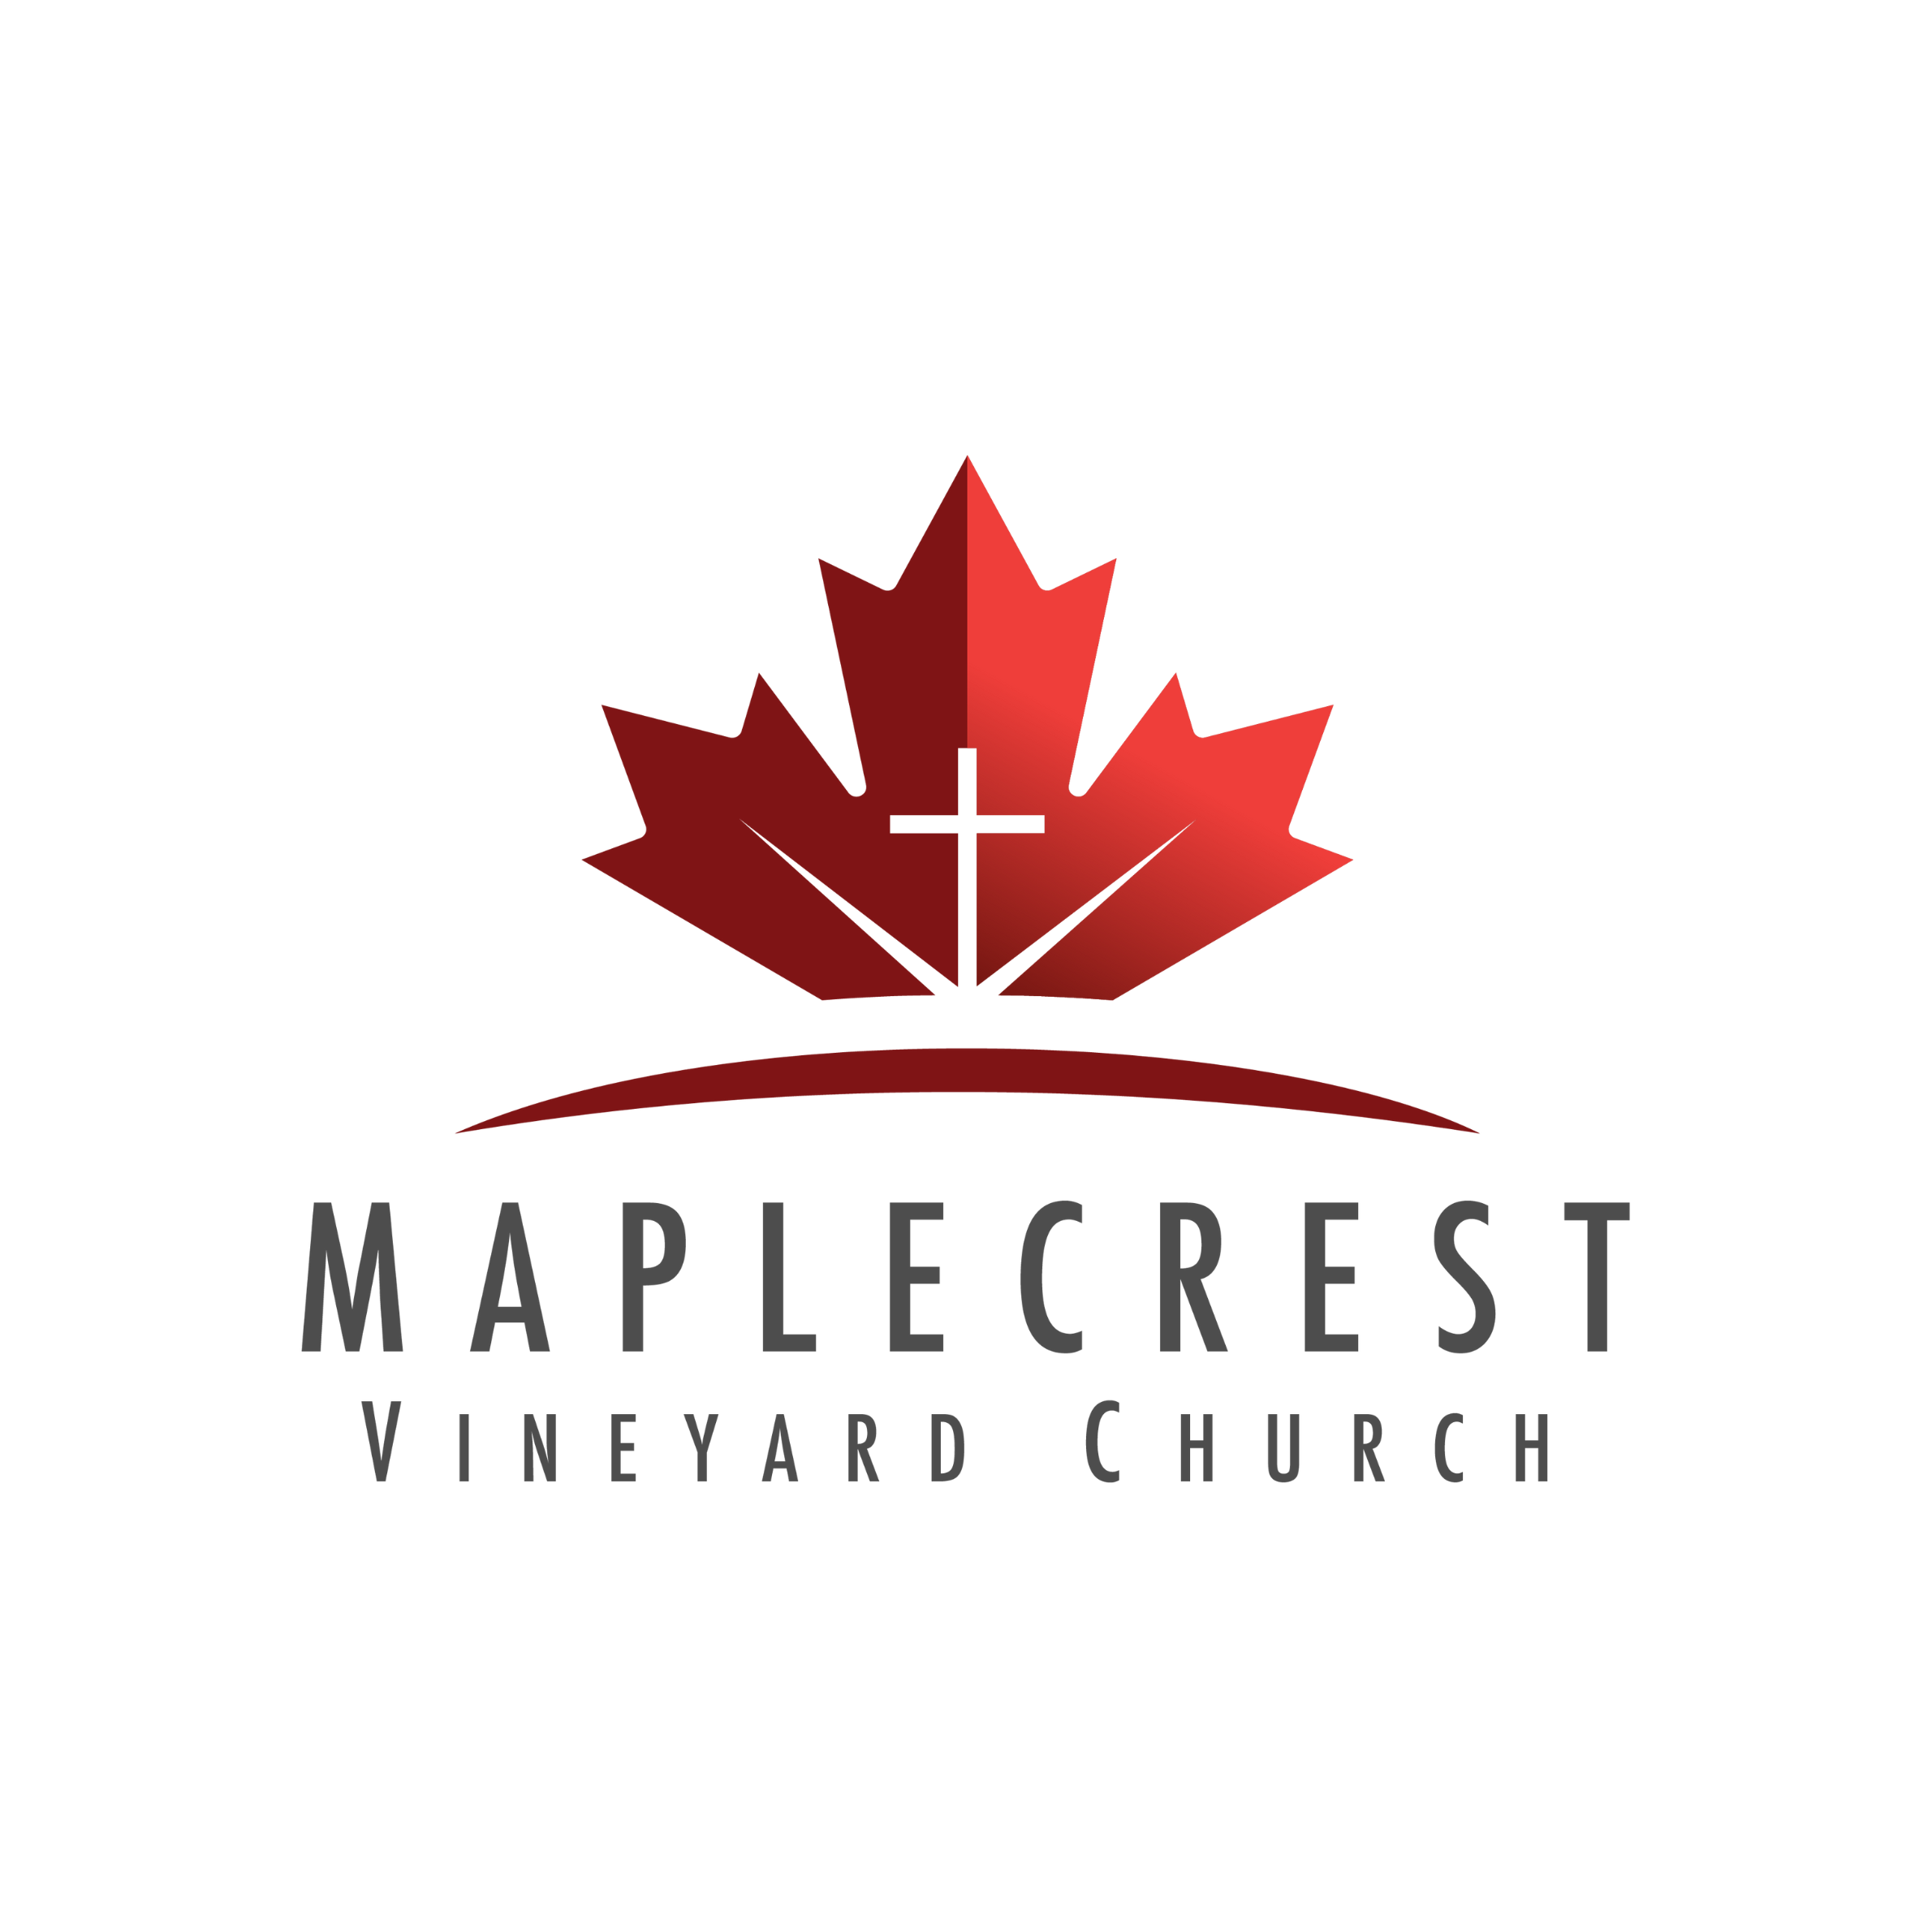 Maplecrest Vineyard Church